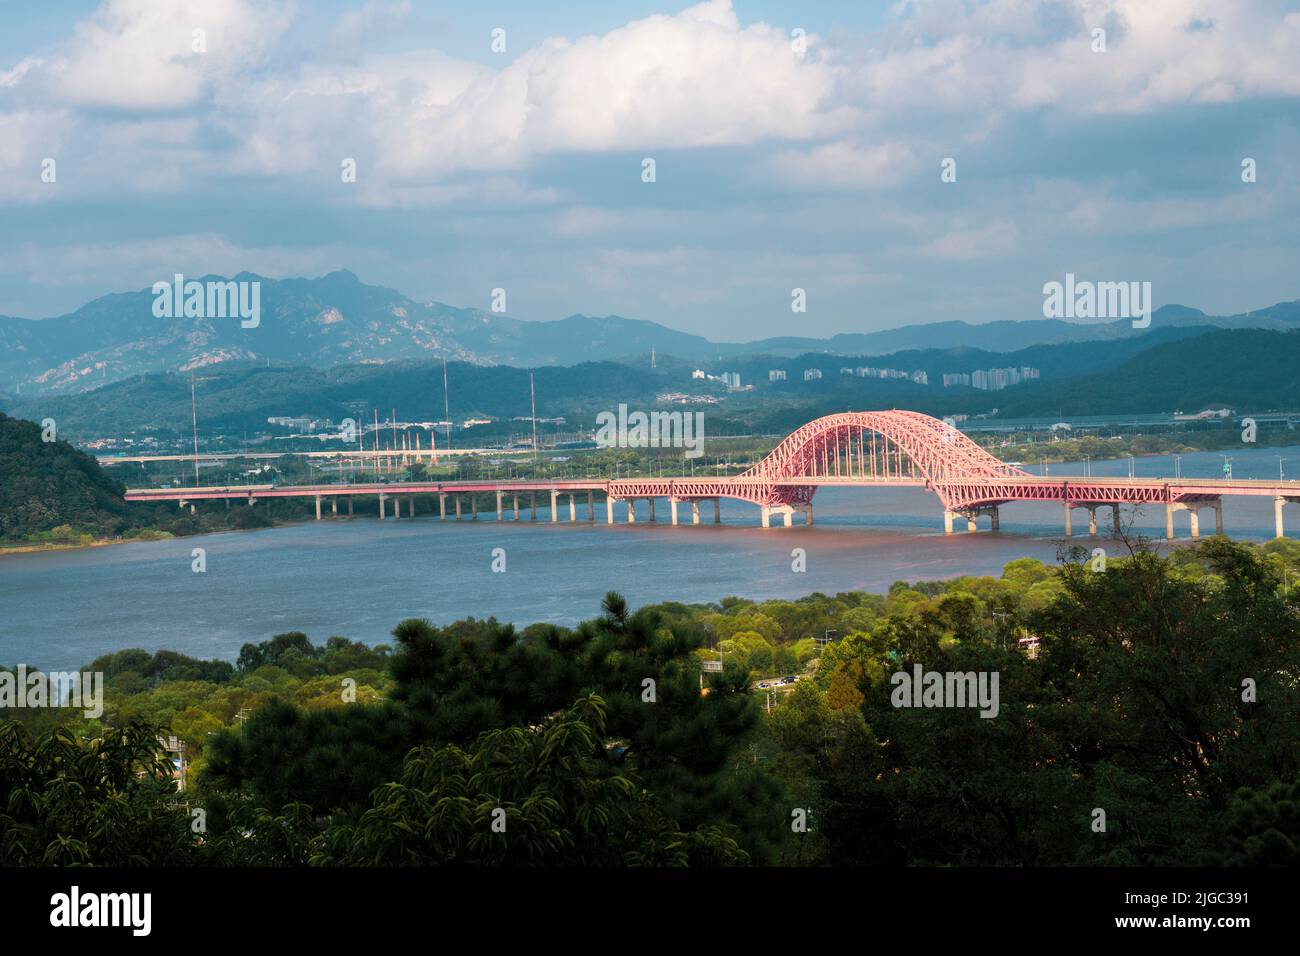 Banghwa Bridge and the surrounding landscape Stock Photo